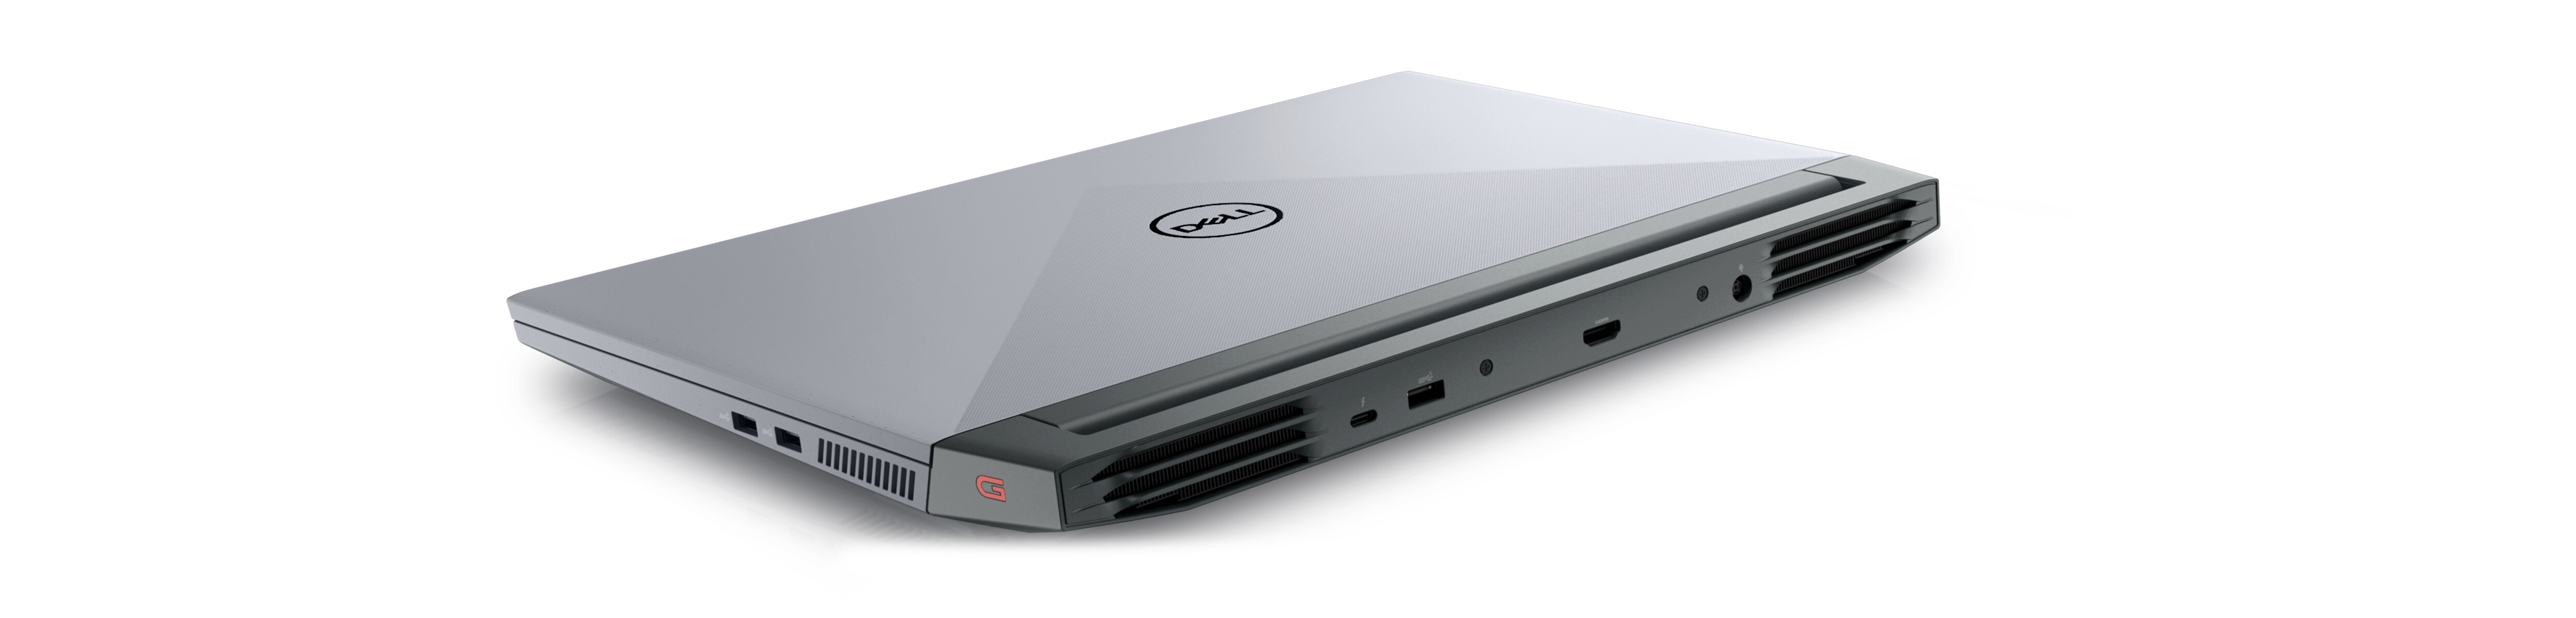 Bild eines Dell G15 5525 Gaming-Laptops